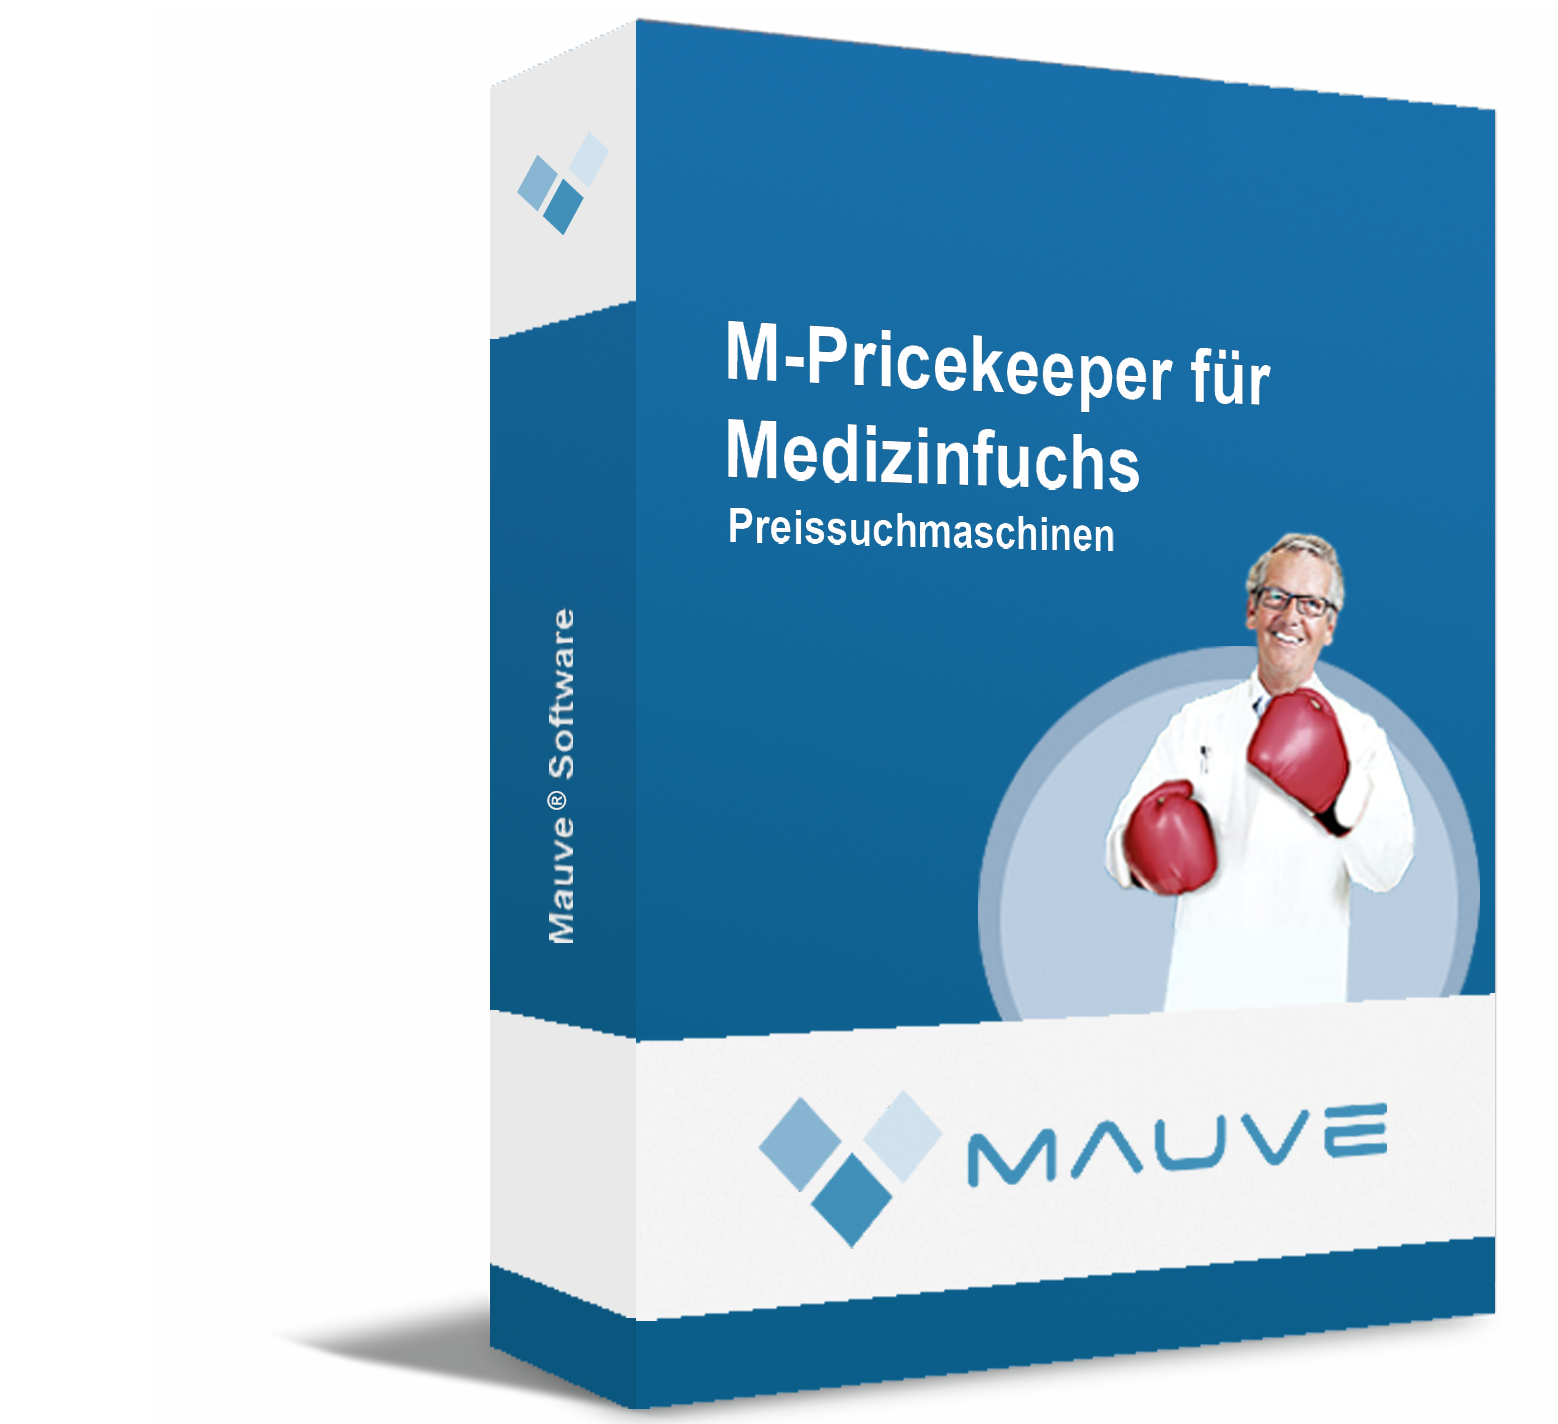 M-PriceKeeper für Medizinfuchs